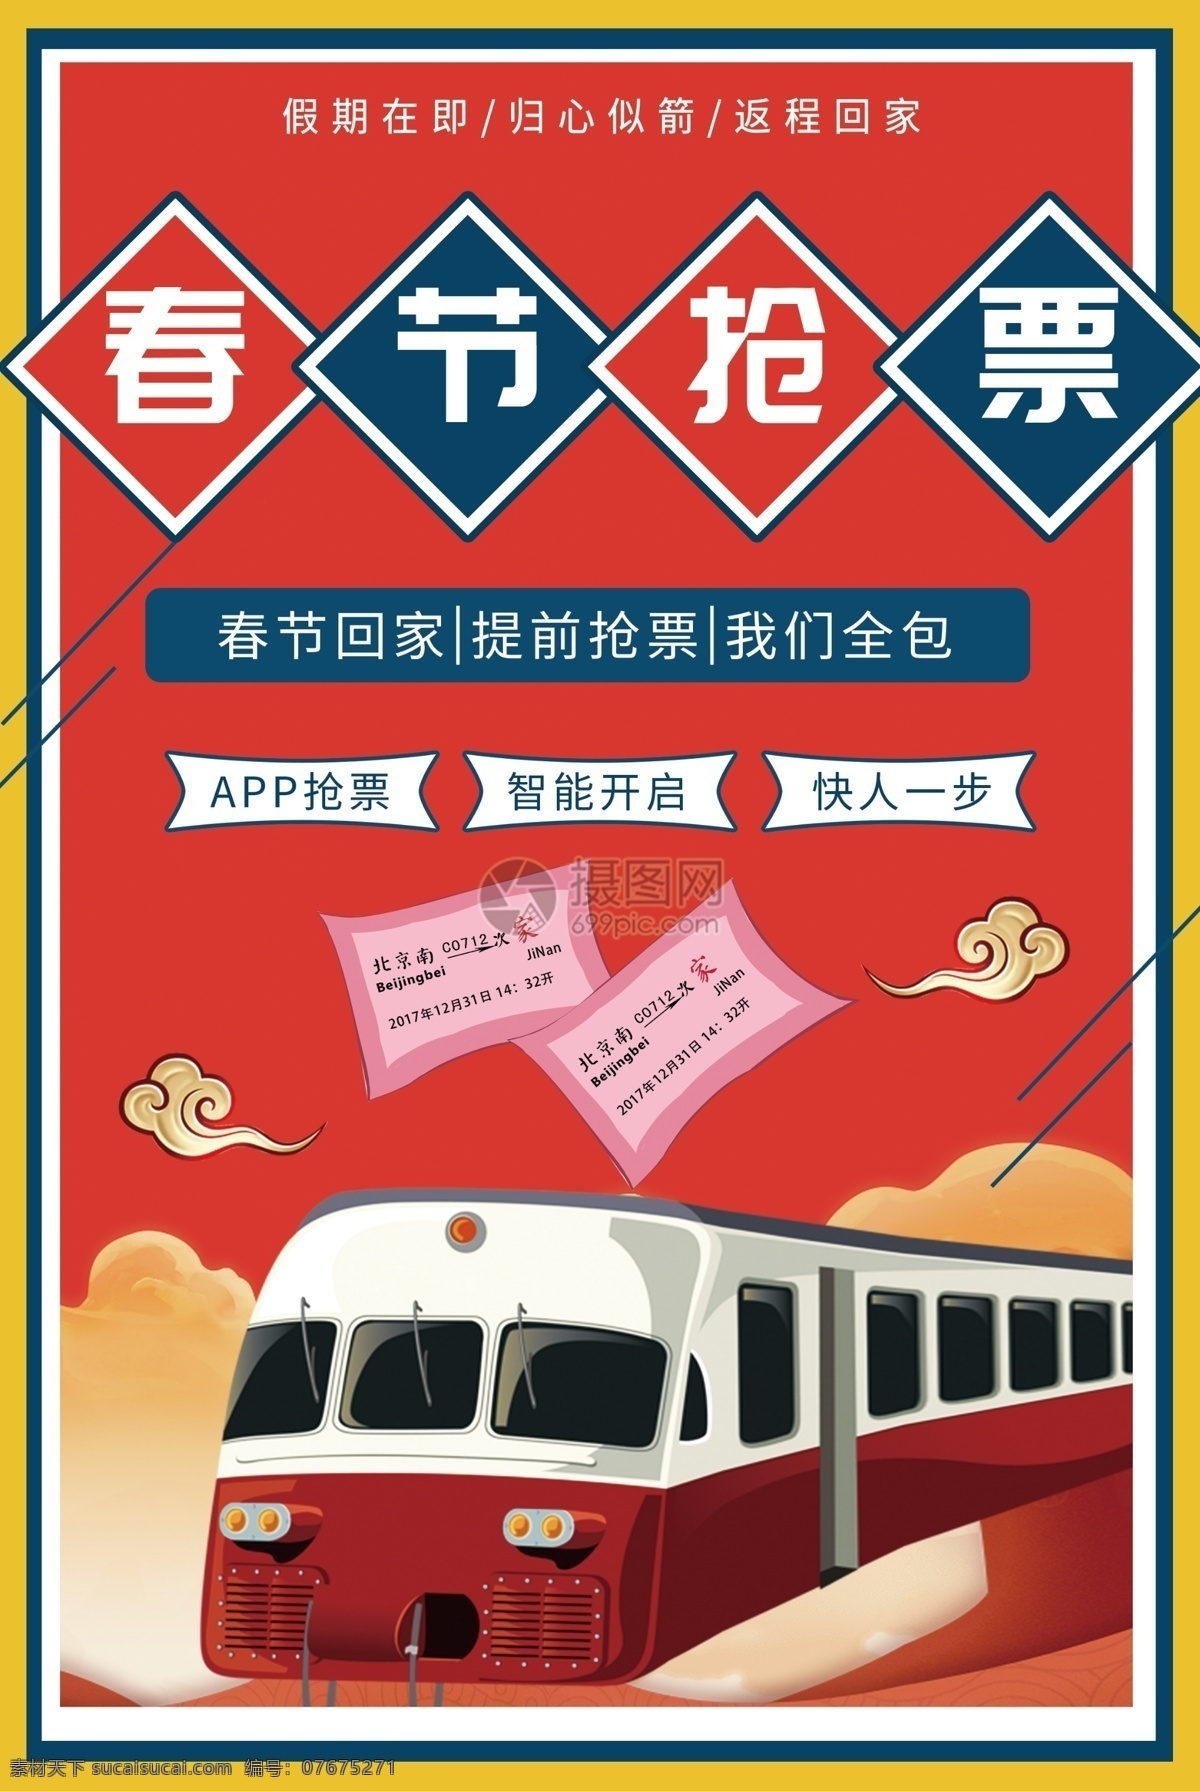 红色 风格 春节 放假 抢 票 购票 海报 插画风格 大红色 春运 火车 抢票 抢票海报